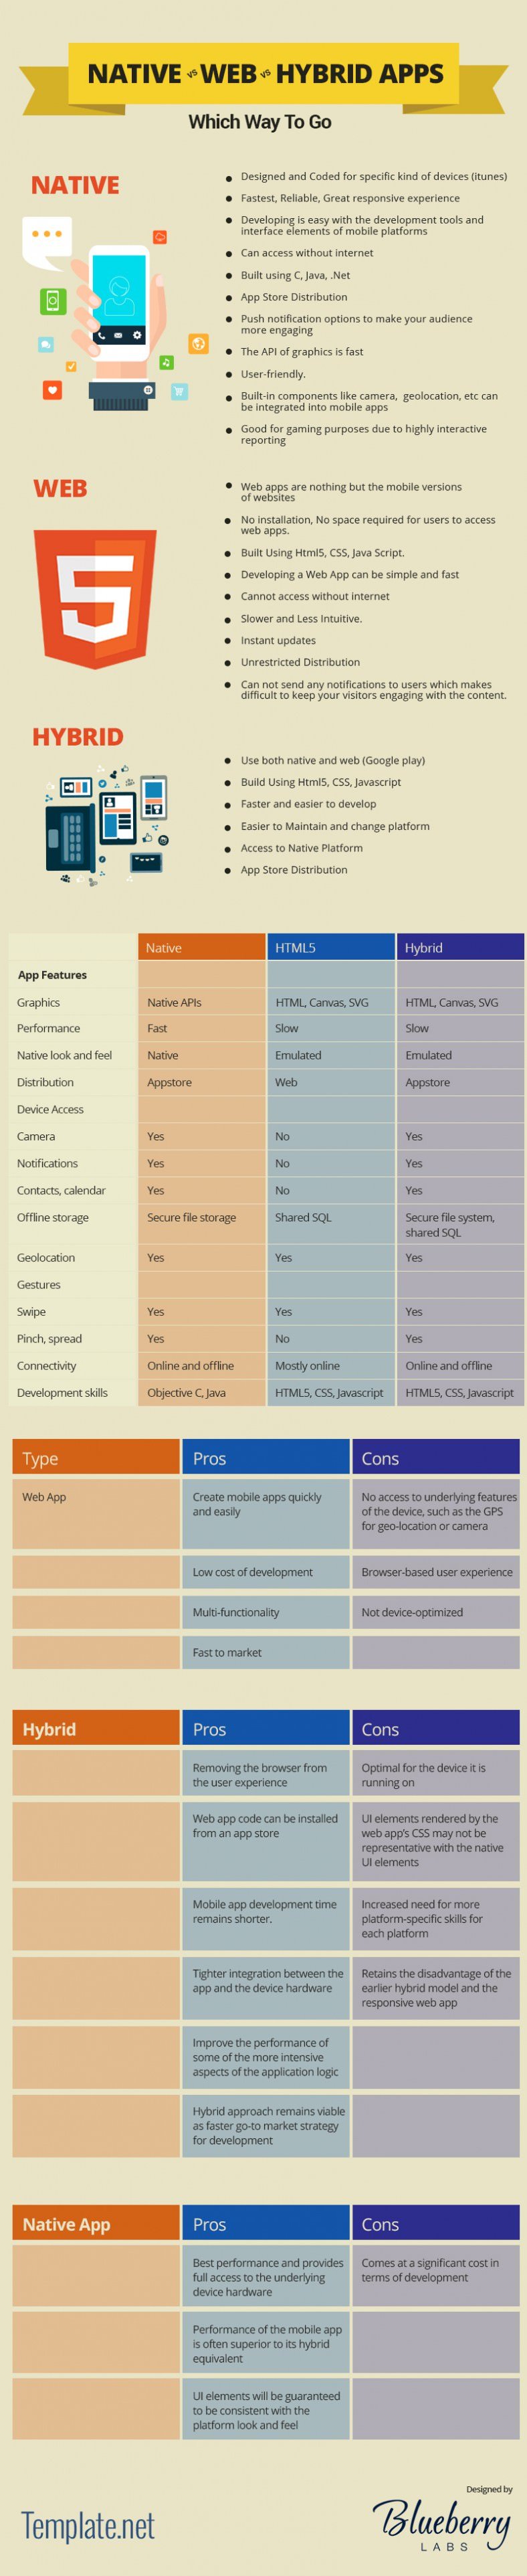 native-vs-web-vs-hybrid-infographic-788x3849